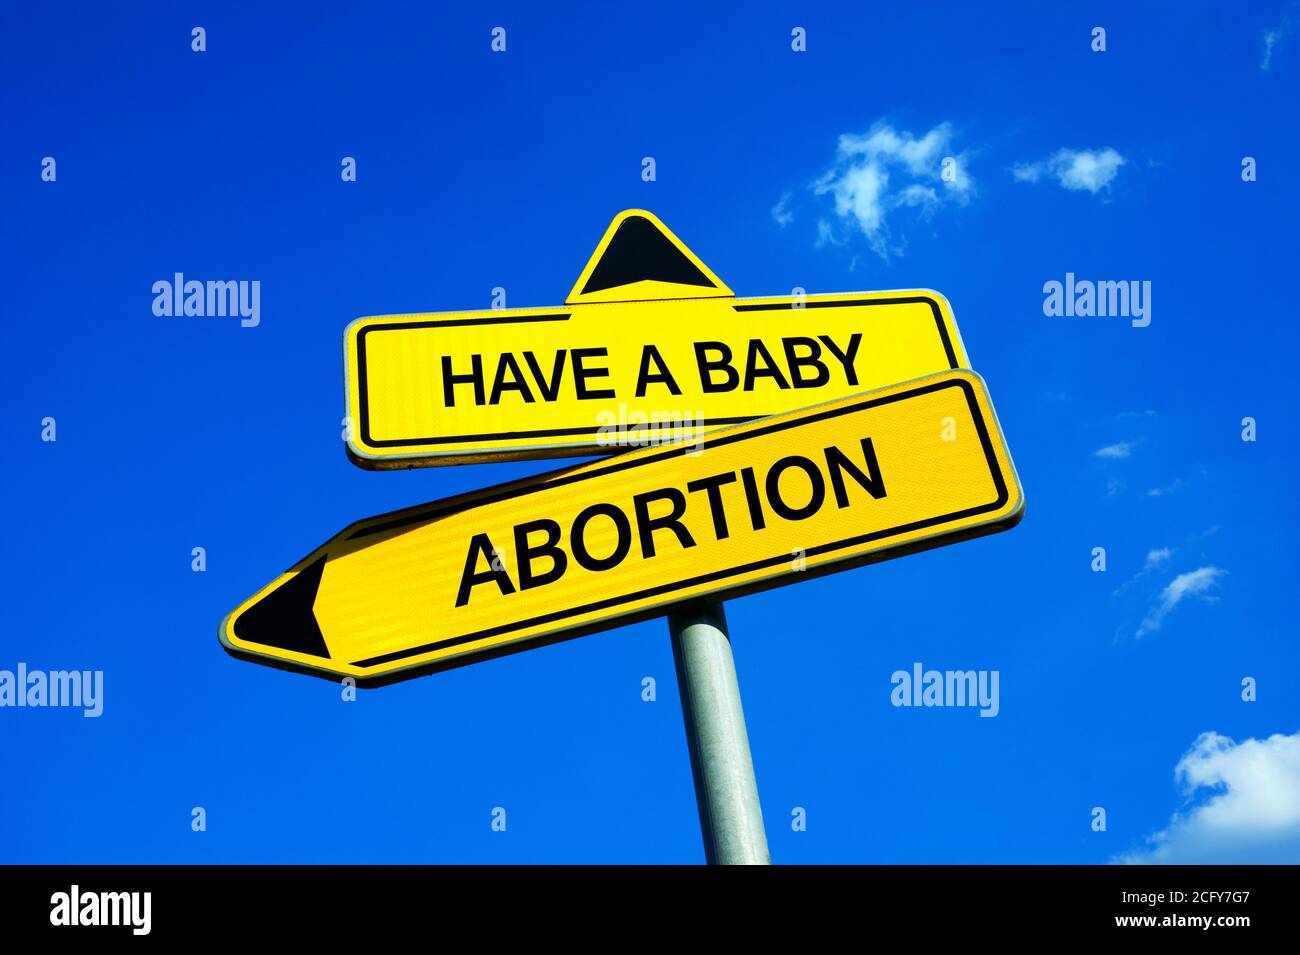 Haben Sie ein Baby oder Abtreibung - Verkehrsschild mit zwei Optionen - Mutter und Dilemma der Tötung Fötus wegen Unerwünschte oder unbeabsichtigte Schwangerschaft Stockfoto